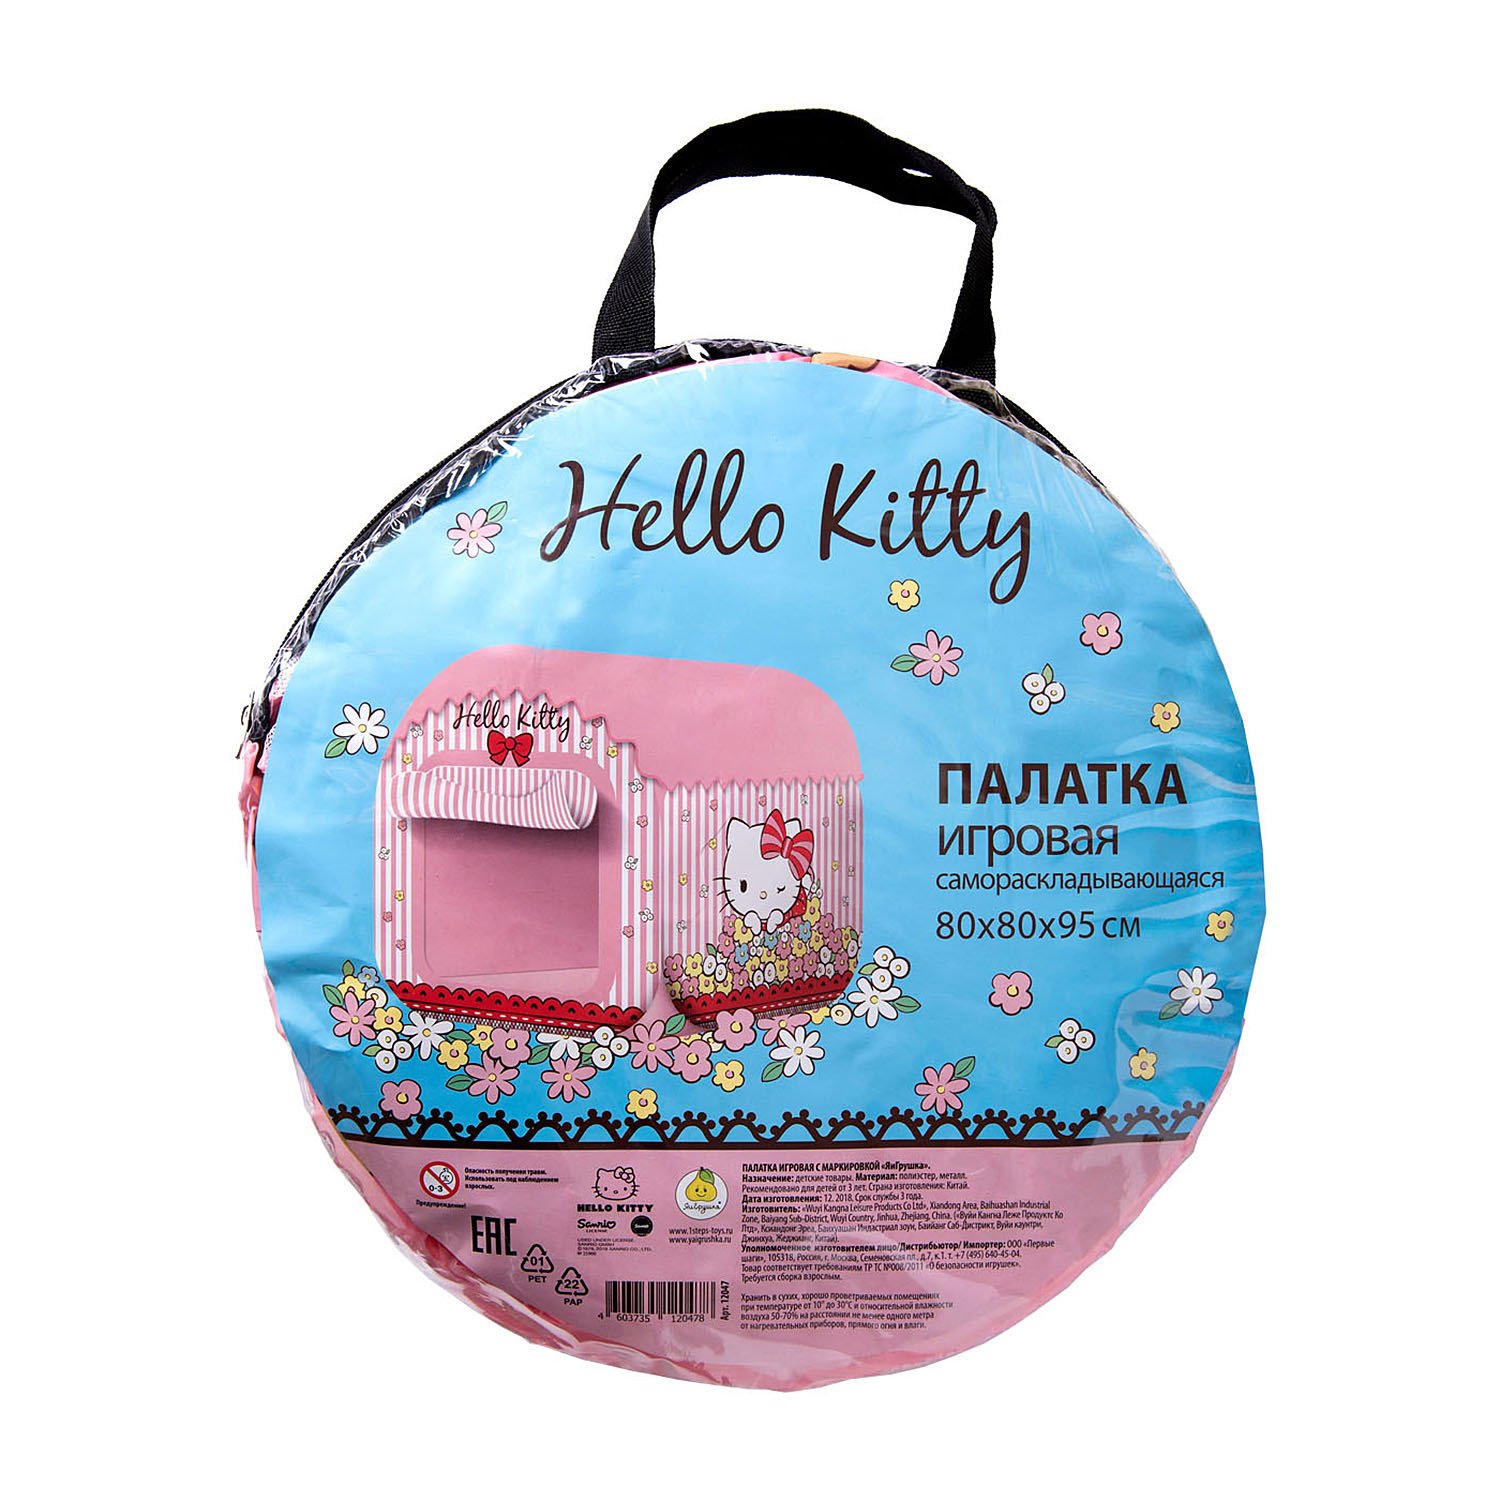 Палатка самораскладывающаяся - Hello Kitty, 80 х 80 х 95 см  